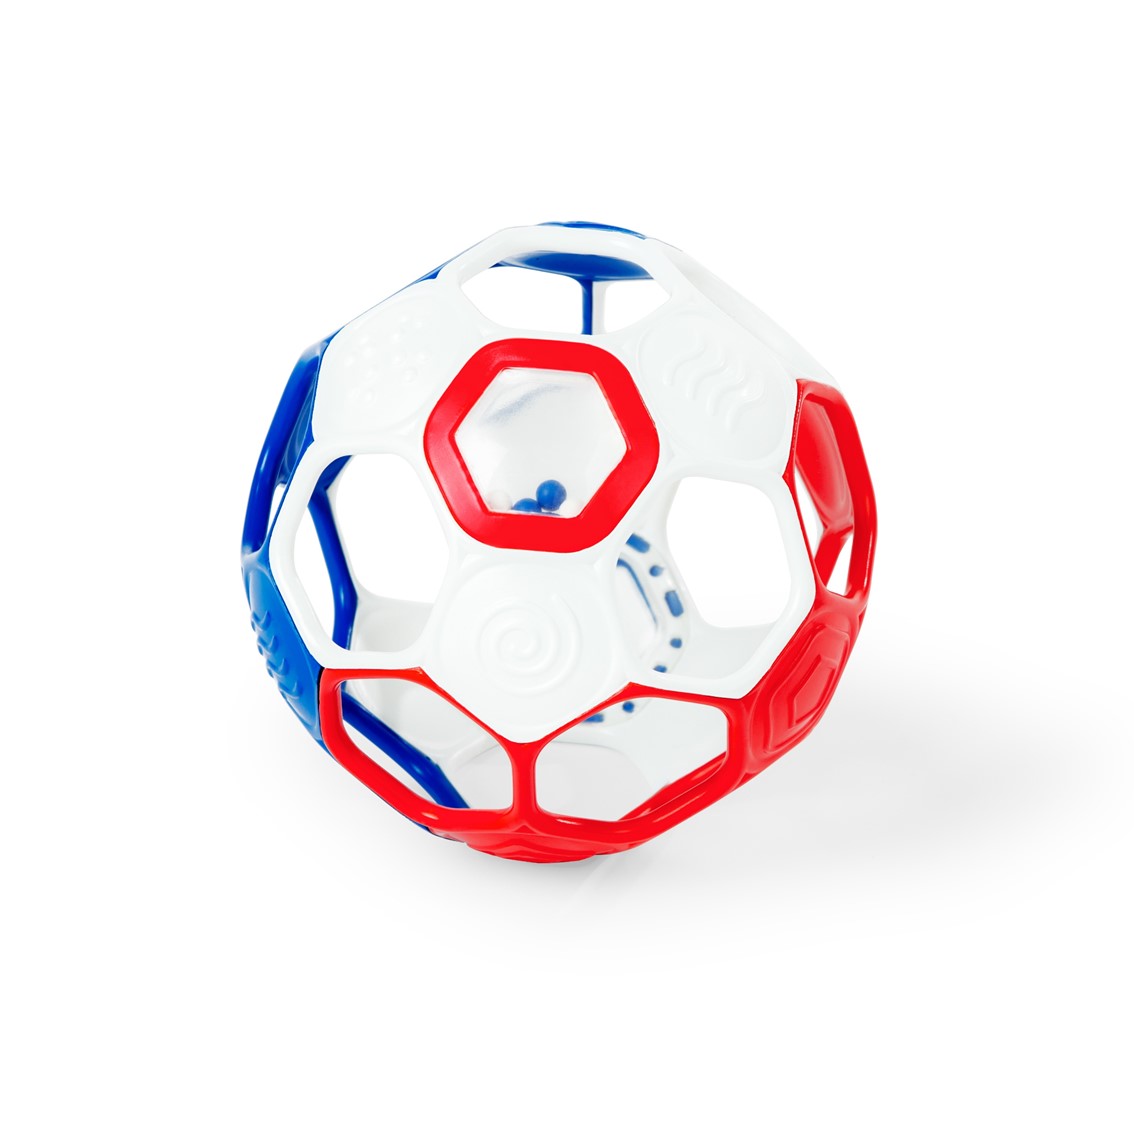 『キッズ・ツー(KidsII) オーボール サッカーラトルボール 16922』おもちゃ ベビー 玩具 がらがら ラトル 商品紹介 サッカーボール型ラトル 転がしたり、振って音を鳴らしたり♪サッカーボール型ラトル。 通常のオーボールラトルよりひと回り大きいサイズです。 商品説明 生産地 企画：アメリカ　製造：中国商品サイズ：13×13×13cm、60gパッケージサイズ：14.3×13×22.5cm、100g素材 ポリウレタン、ABS対象年齢 0ヵ月〜安全基準注意事項 CE、ASTMF963、食品衛生法 広告文責 (有)パルス　048-551-7965『キッズ・ツー(KidsII) オーボール サッカーラトルボール 16922』おもちゃ ベビー 玩具 がらがら ラトル